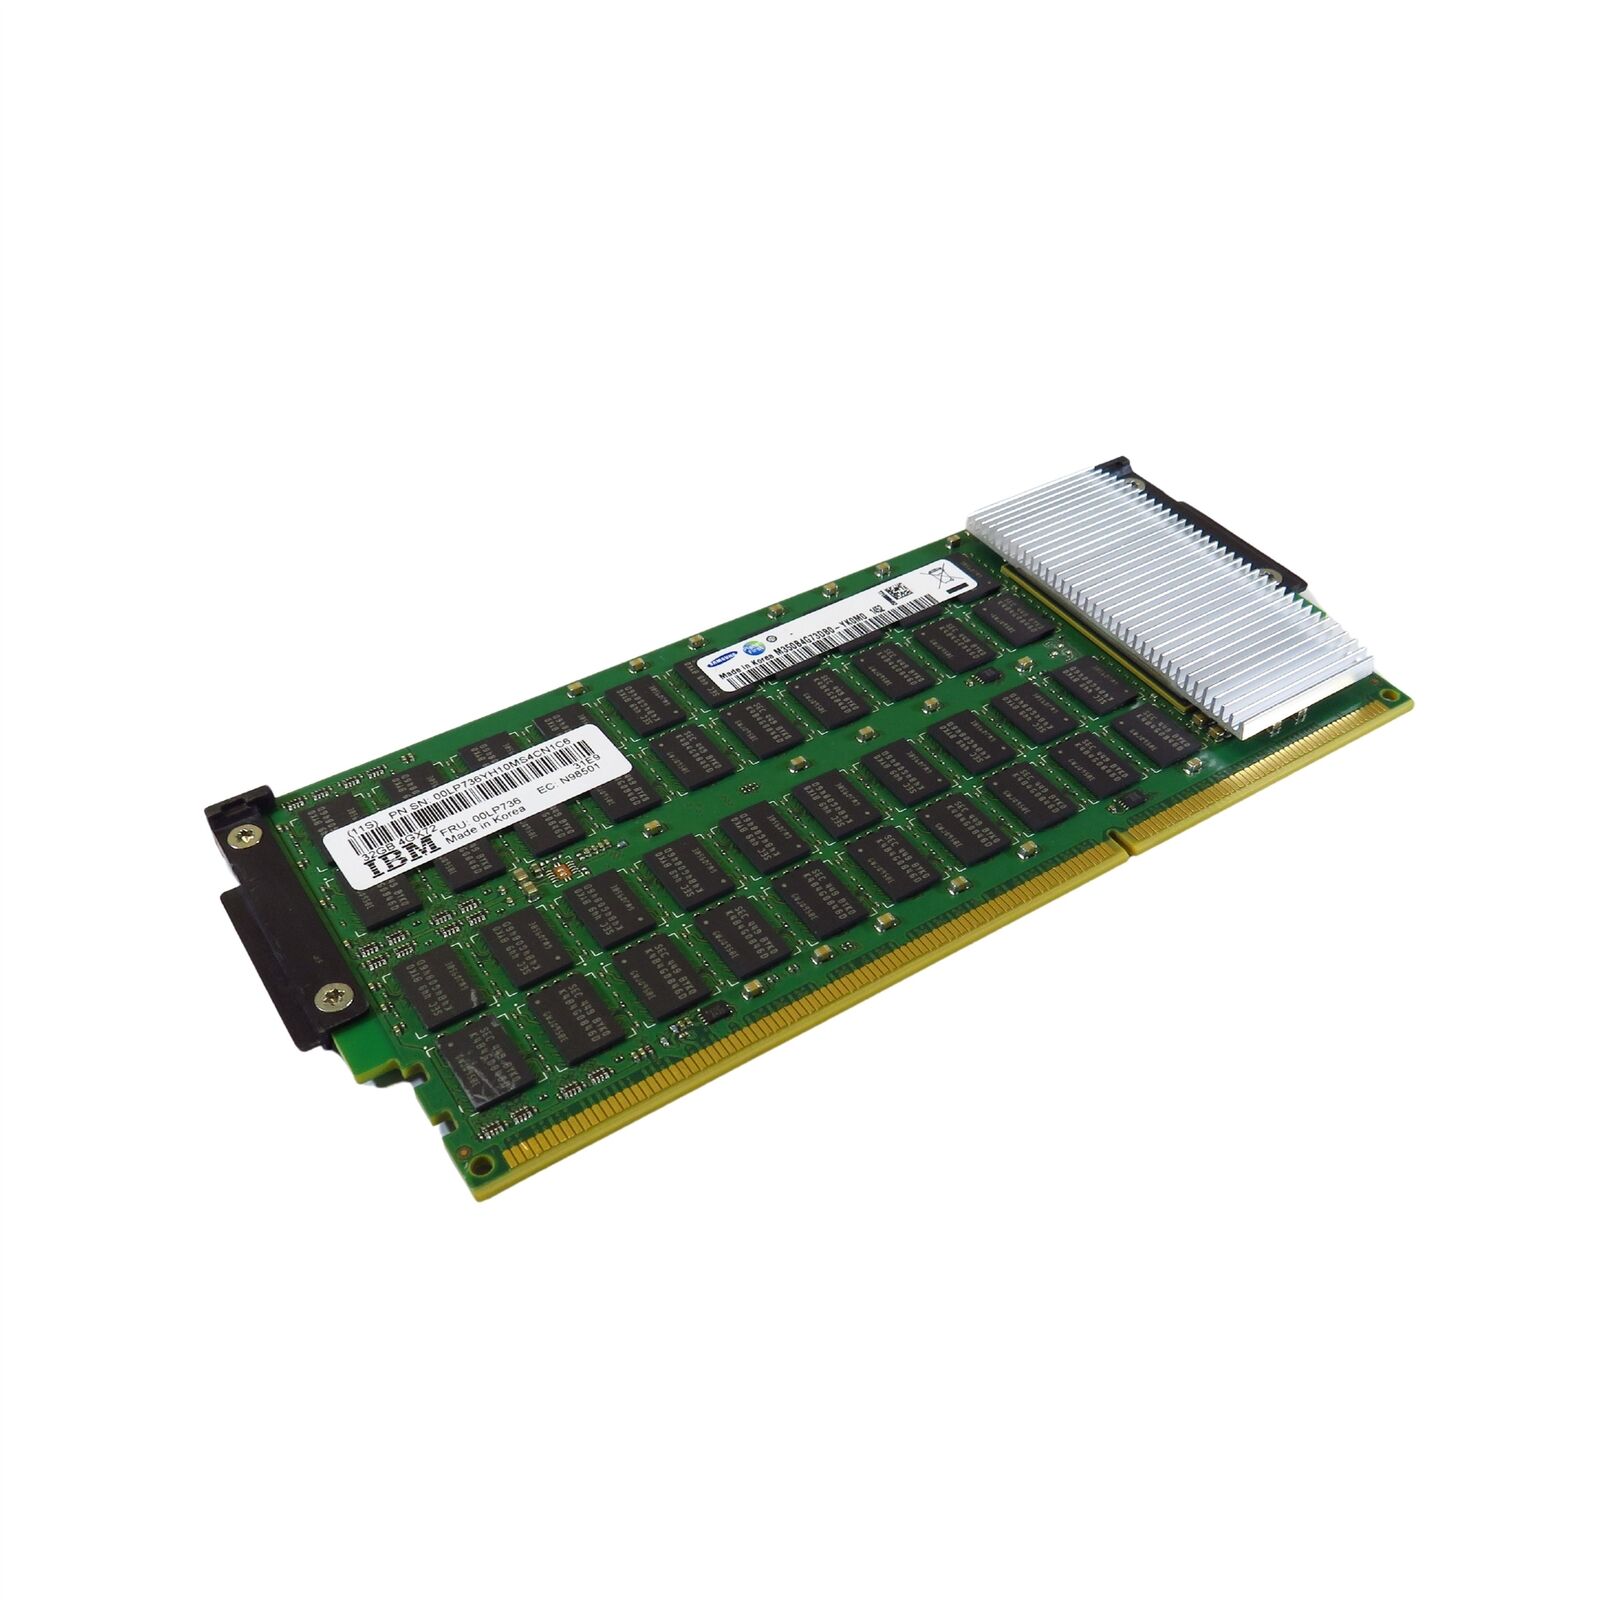 Samsung M350B4G73DB0-YK0M0 32GB 4Gx72 DDR3 CDIMM Server Memory